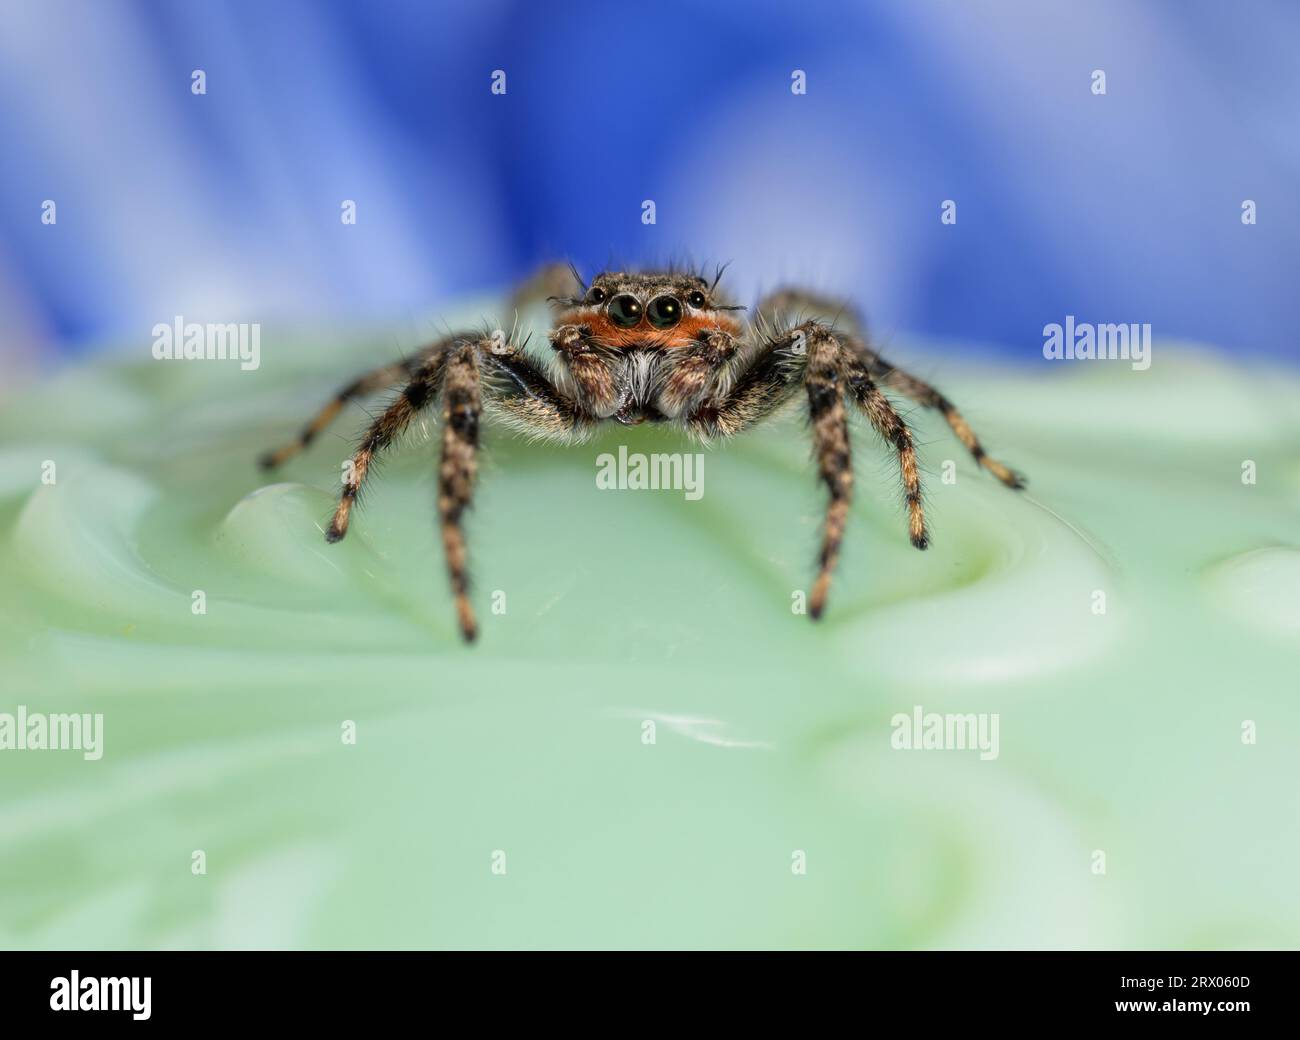 Adorable araignée Tan Jumping, Platycryptus undatus, sur fond vert et bleu Banque D'Images